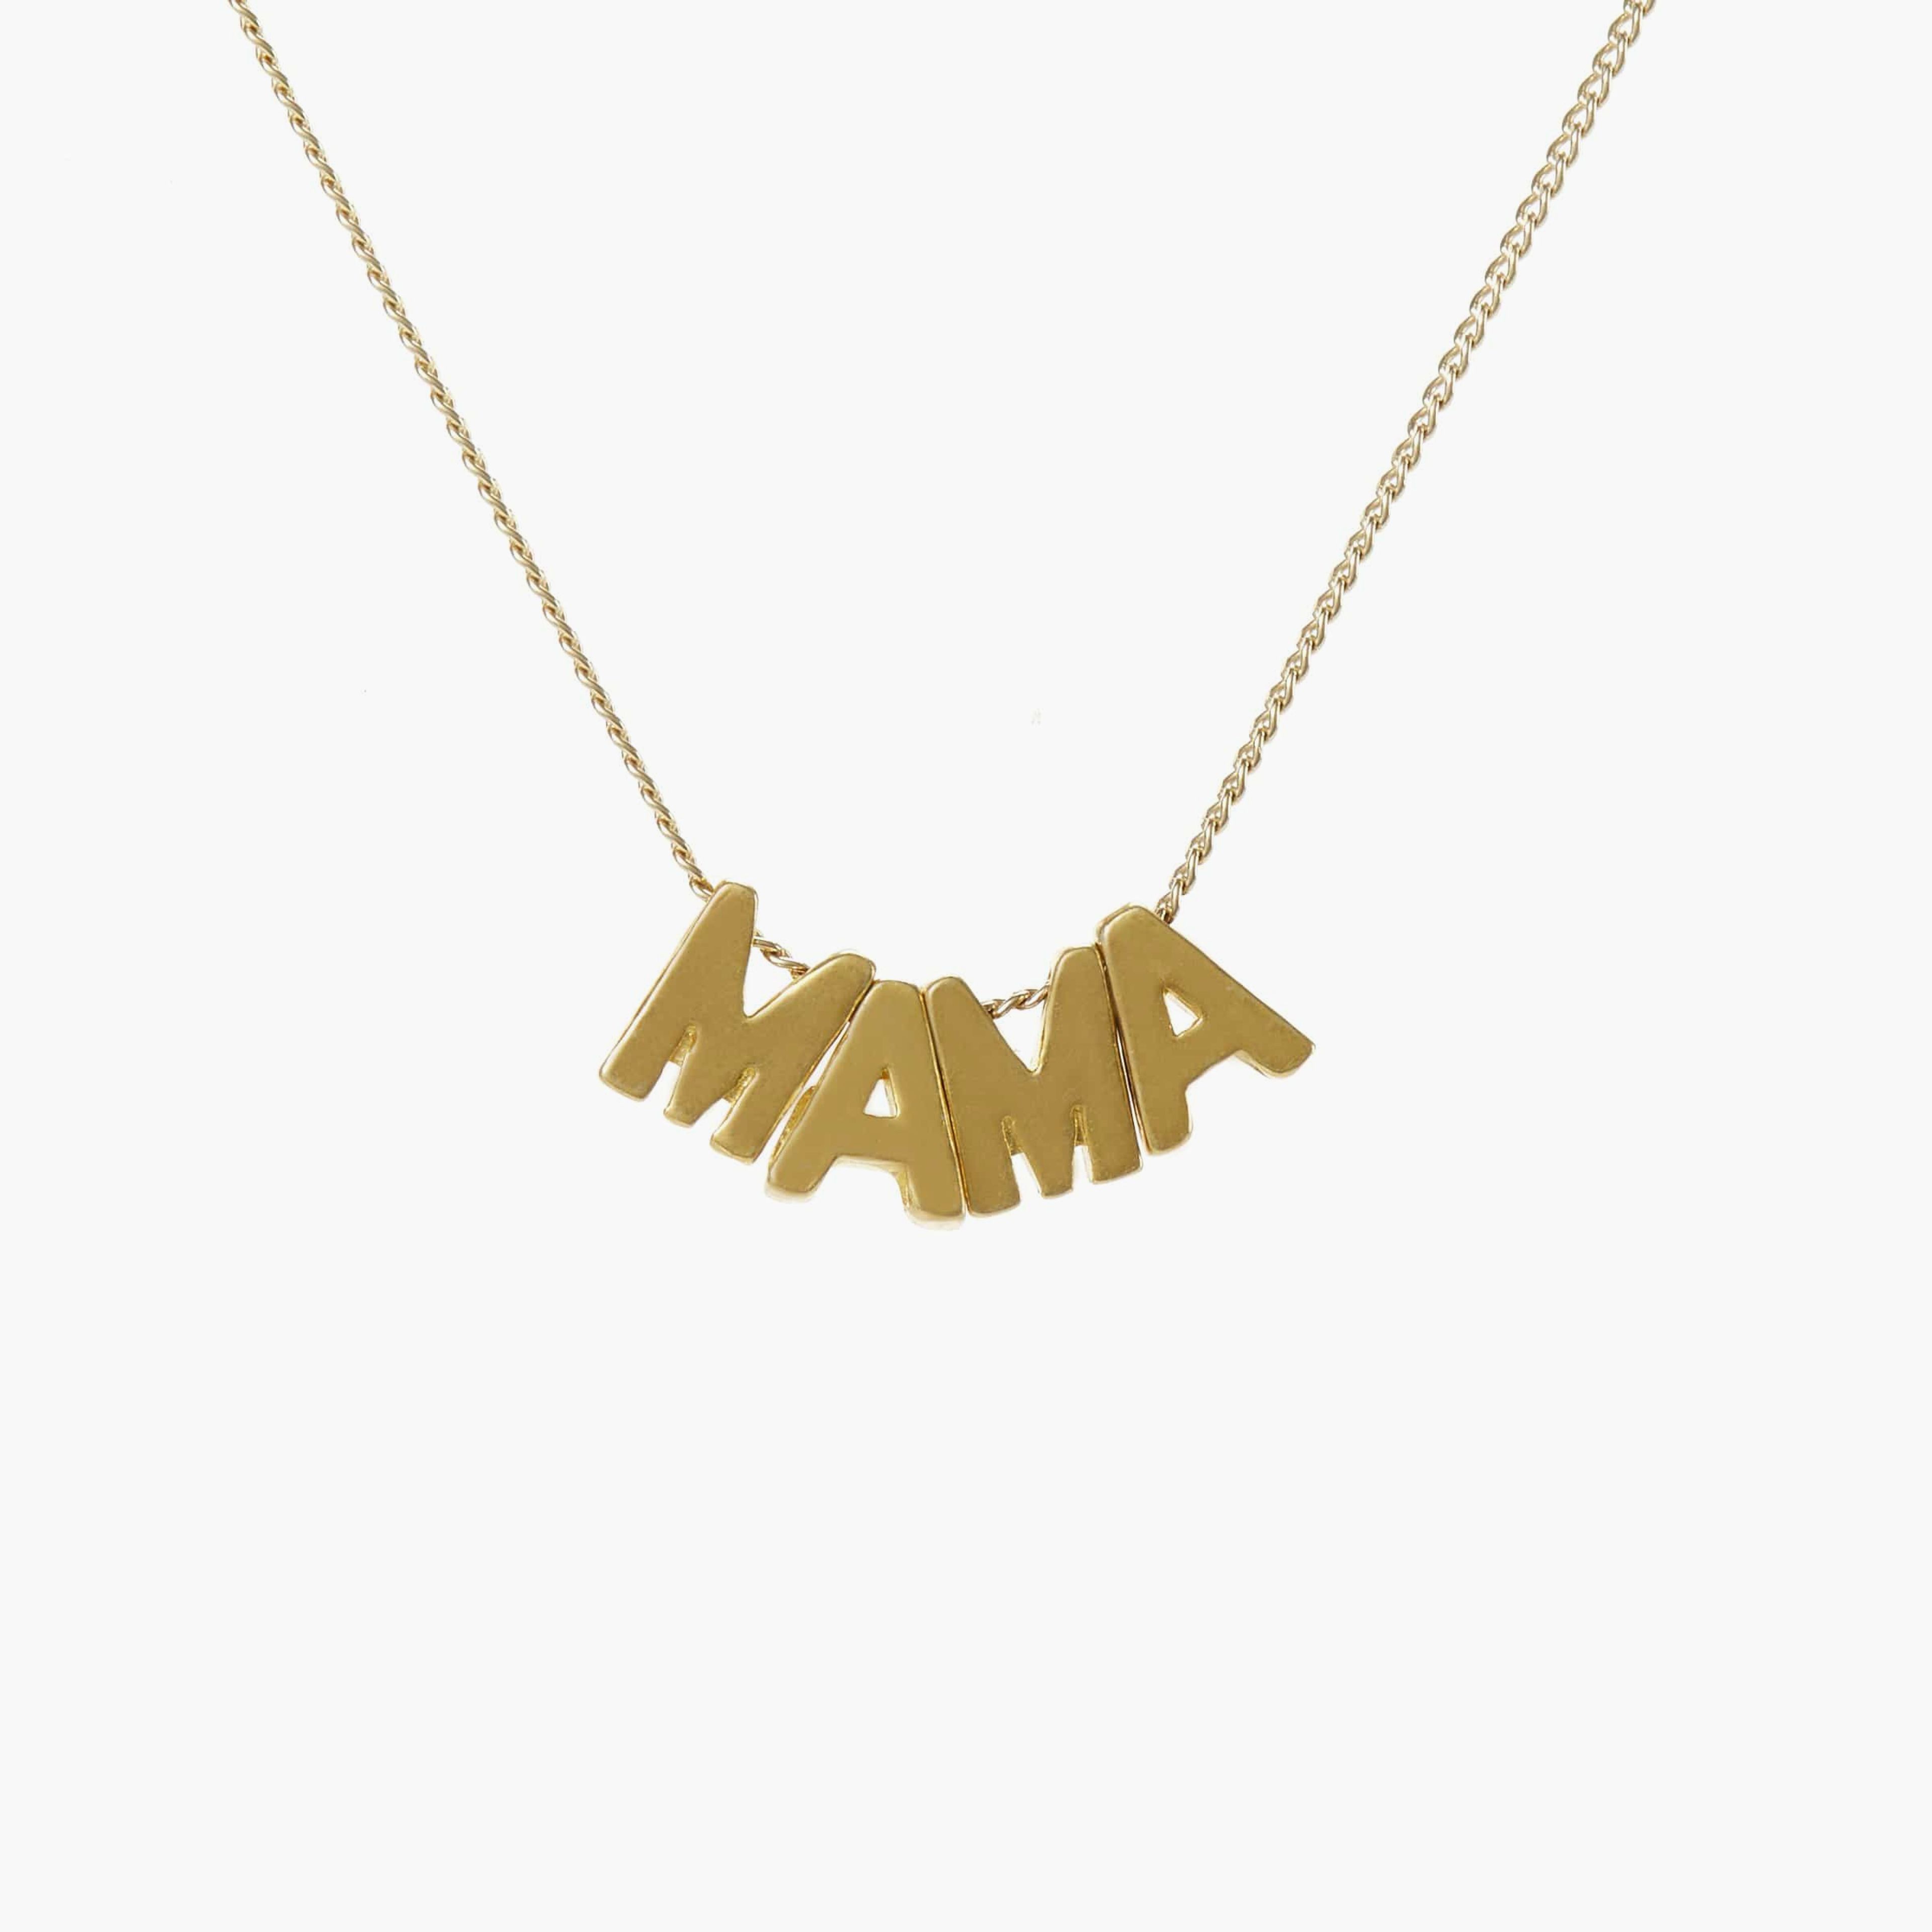 Mama Necklace - Dainty Minimalist Mom Jewelry